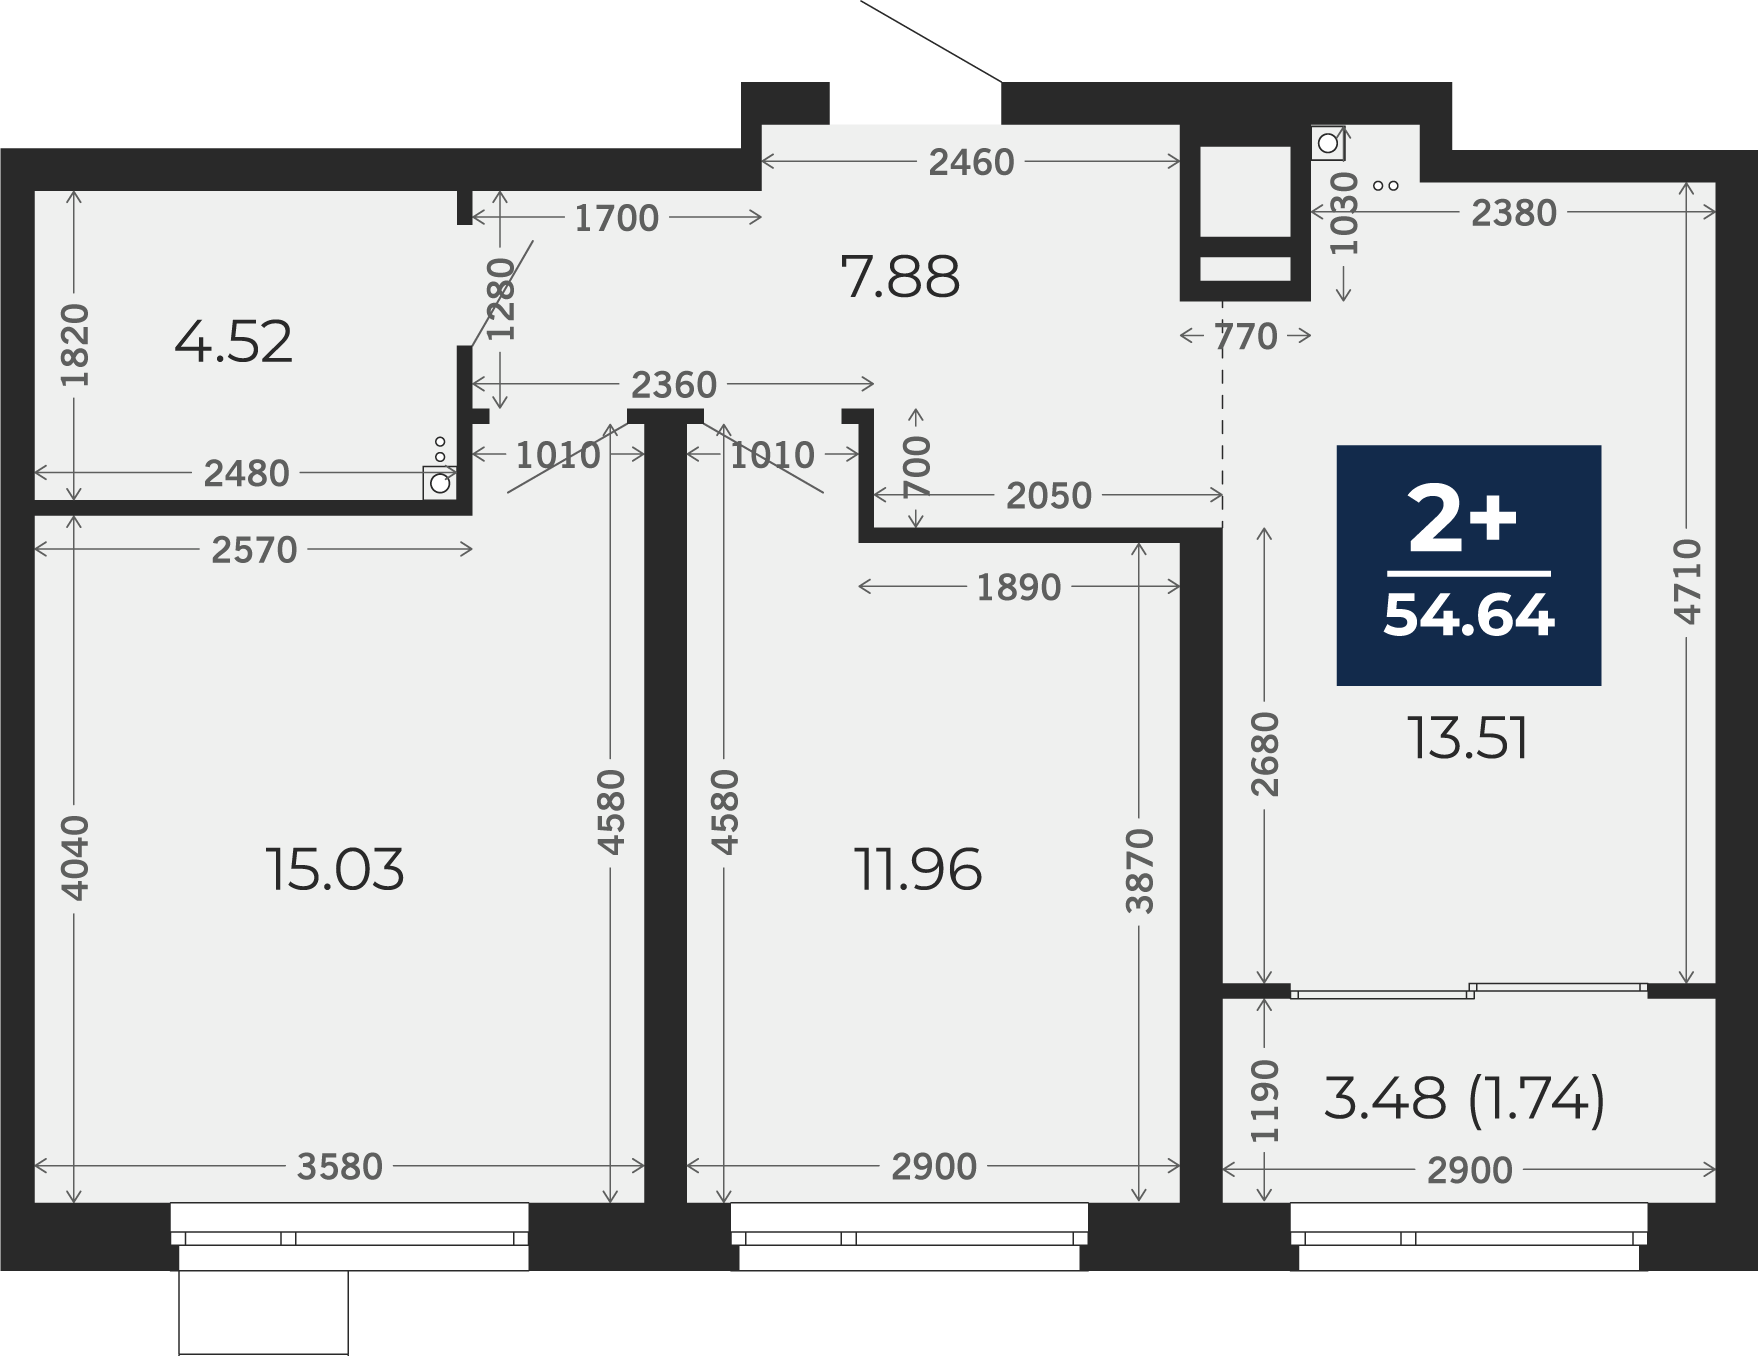 Квартира № 137, 2-комнатная, 54.64 кв. м, 3 этаж